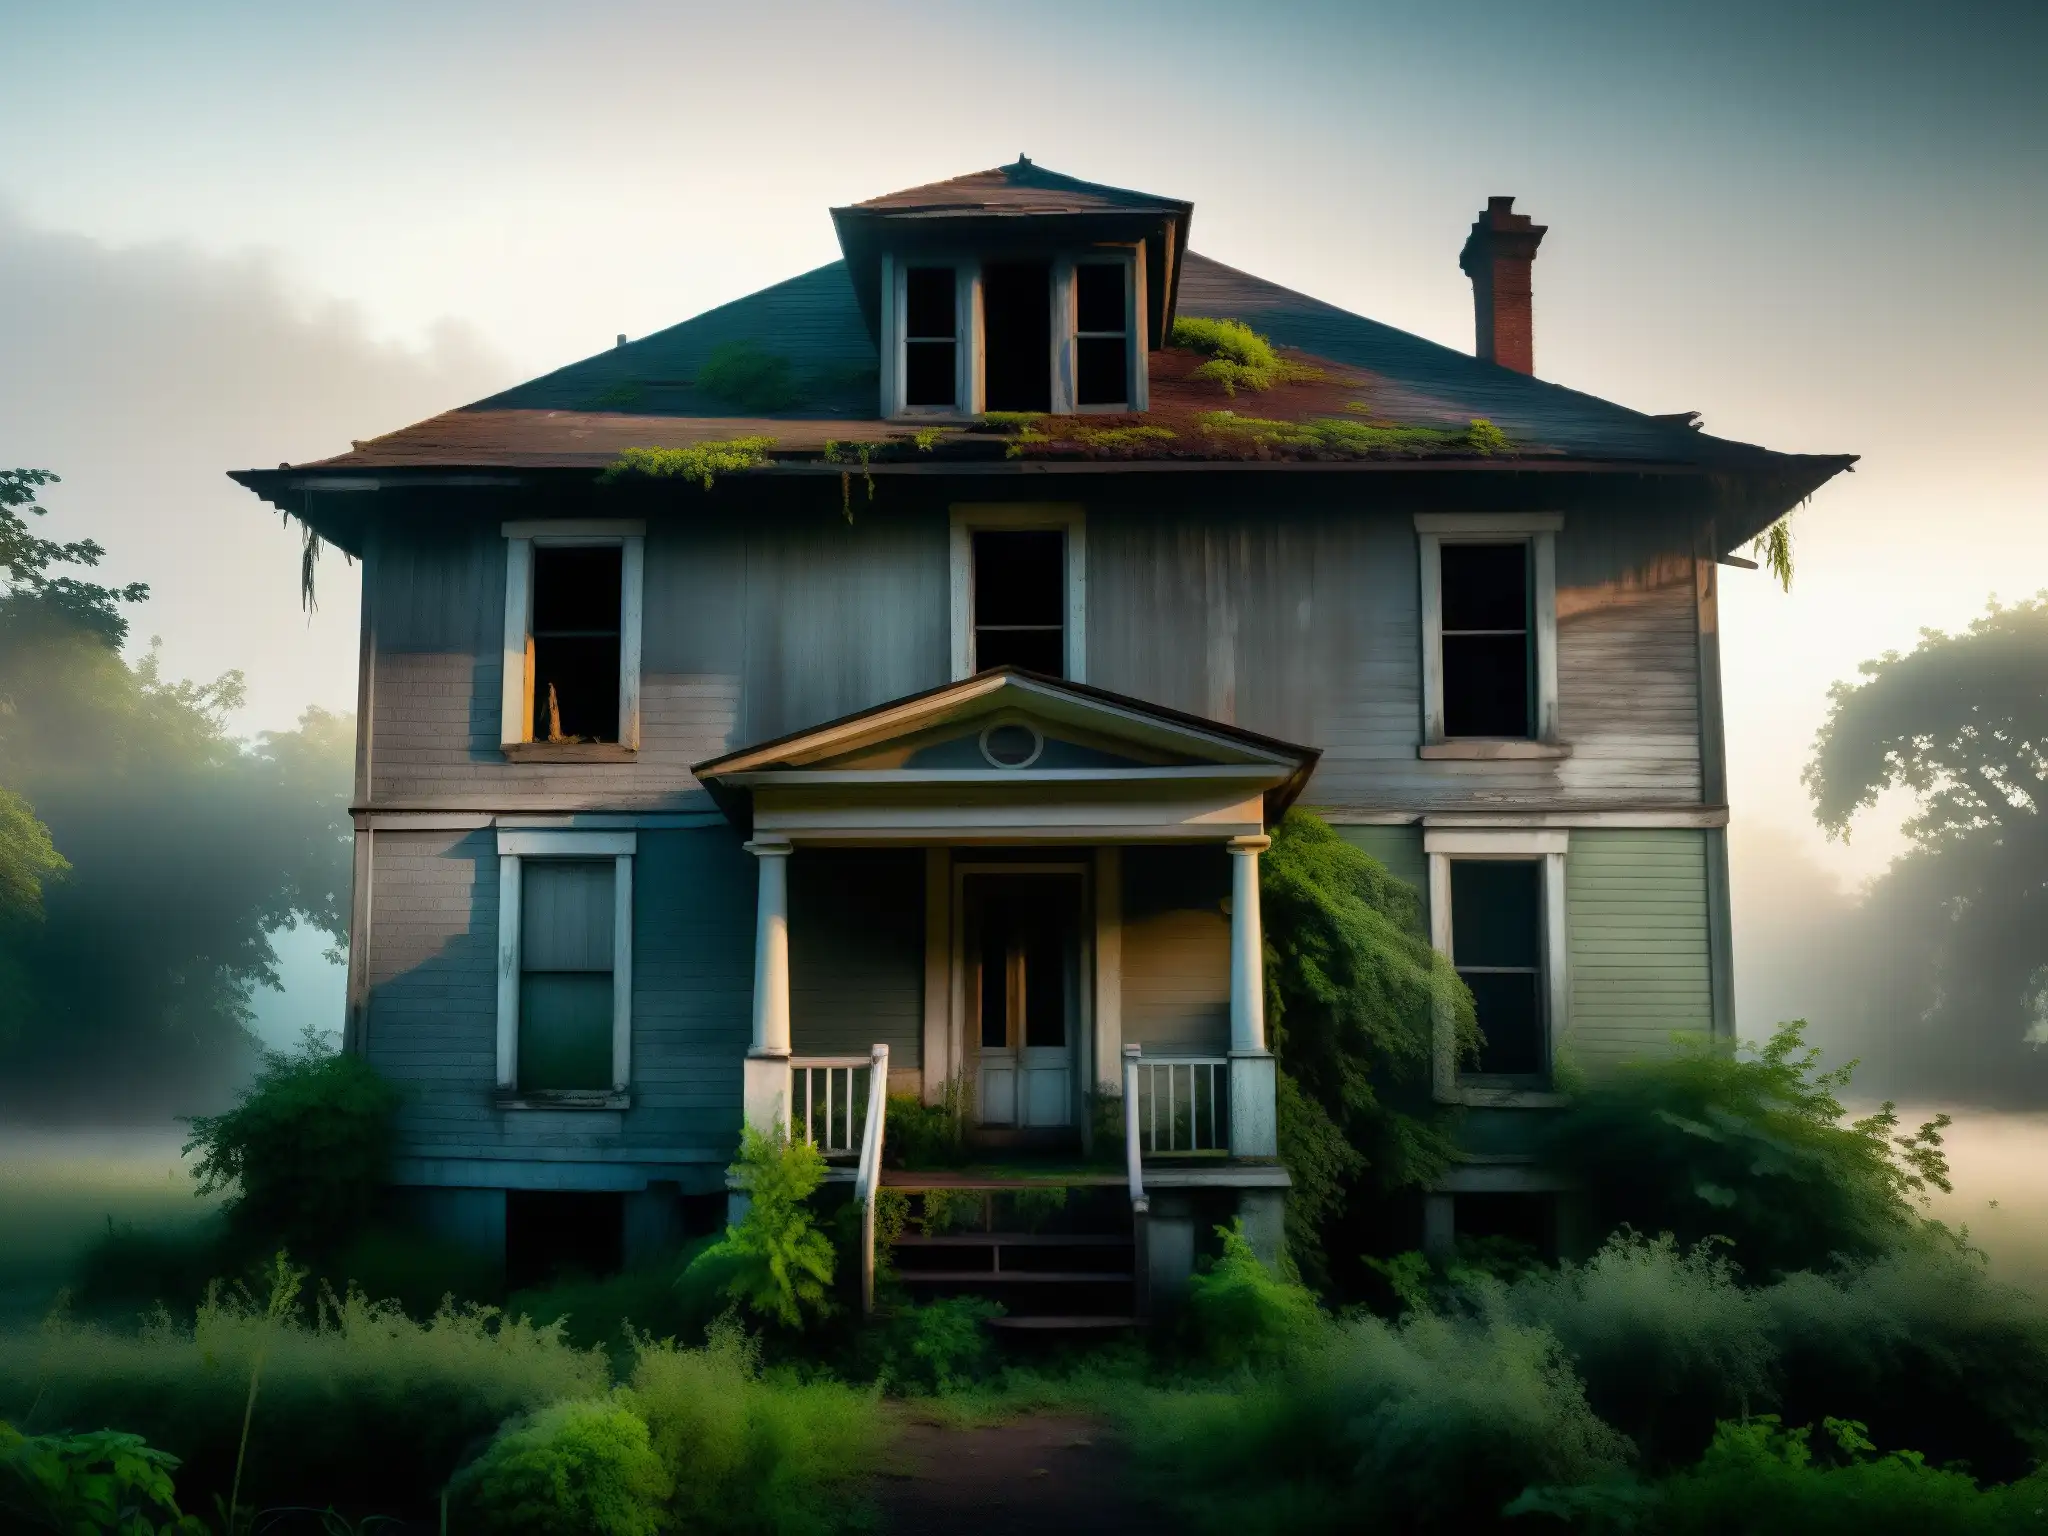 Una casa antigua y deteriorada envuelta en niebla, con pintura descascarada y ventanas rotas, rodeada de vegetación